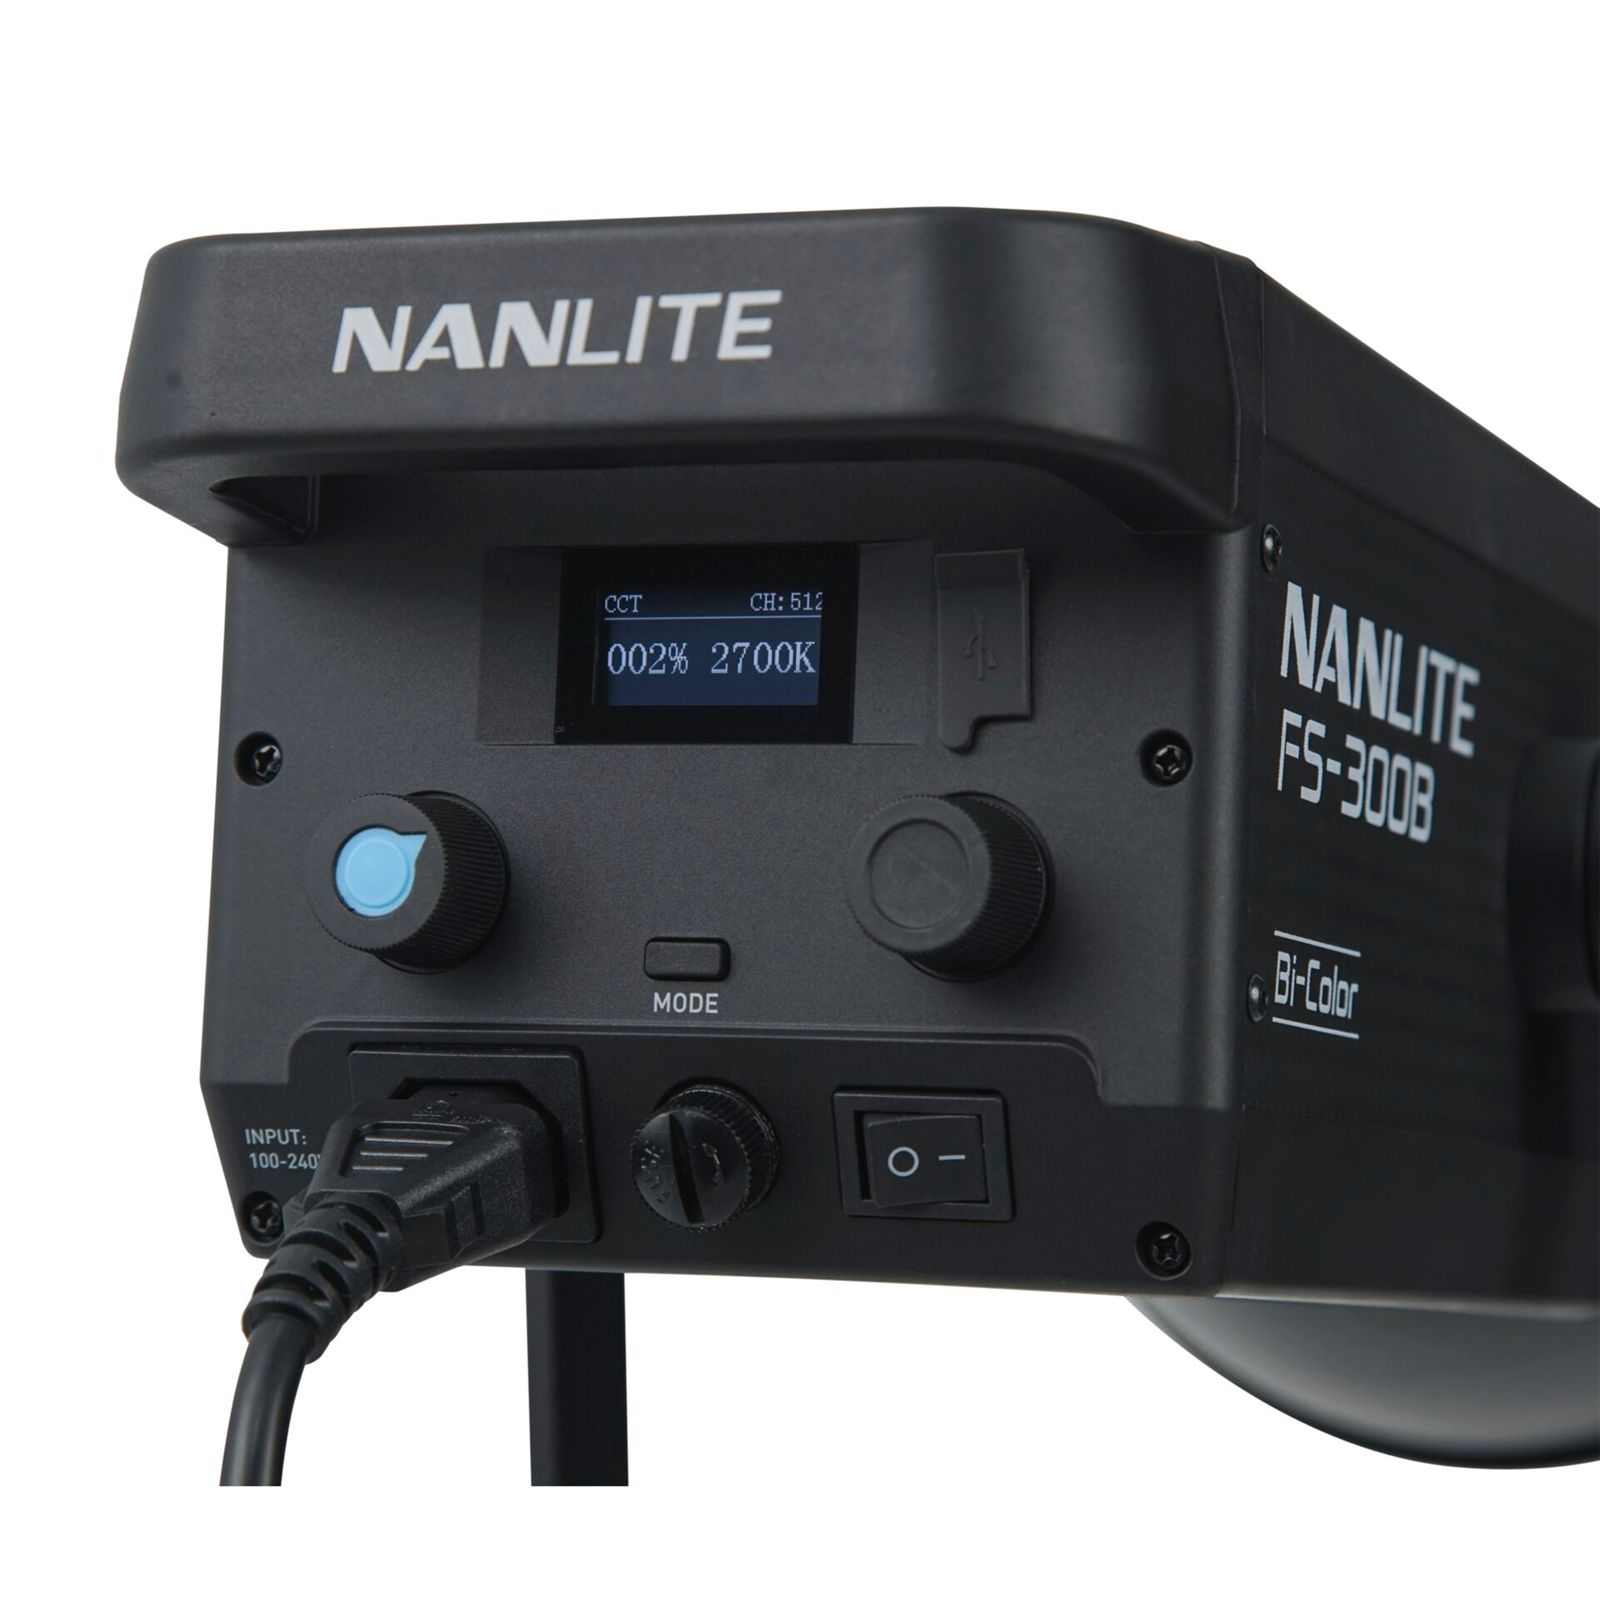 Nanlite FS-300B